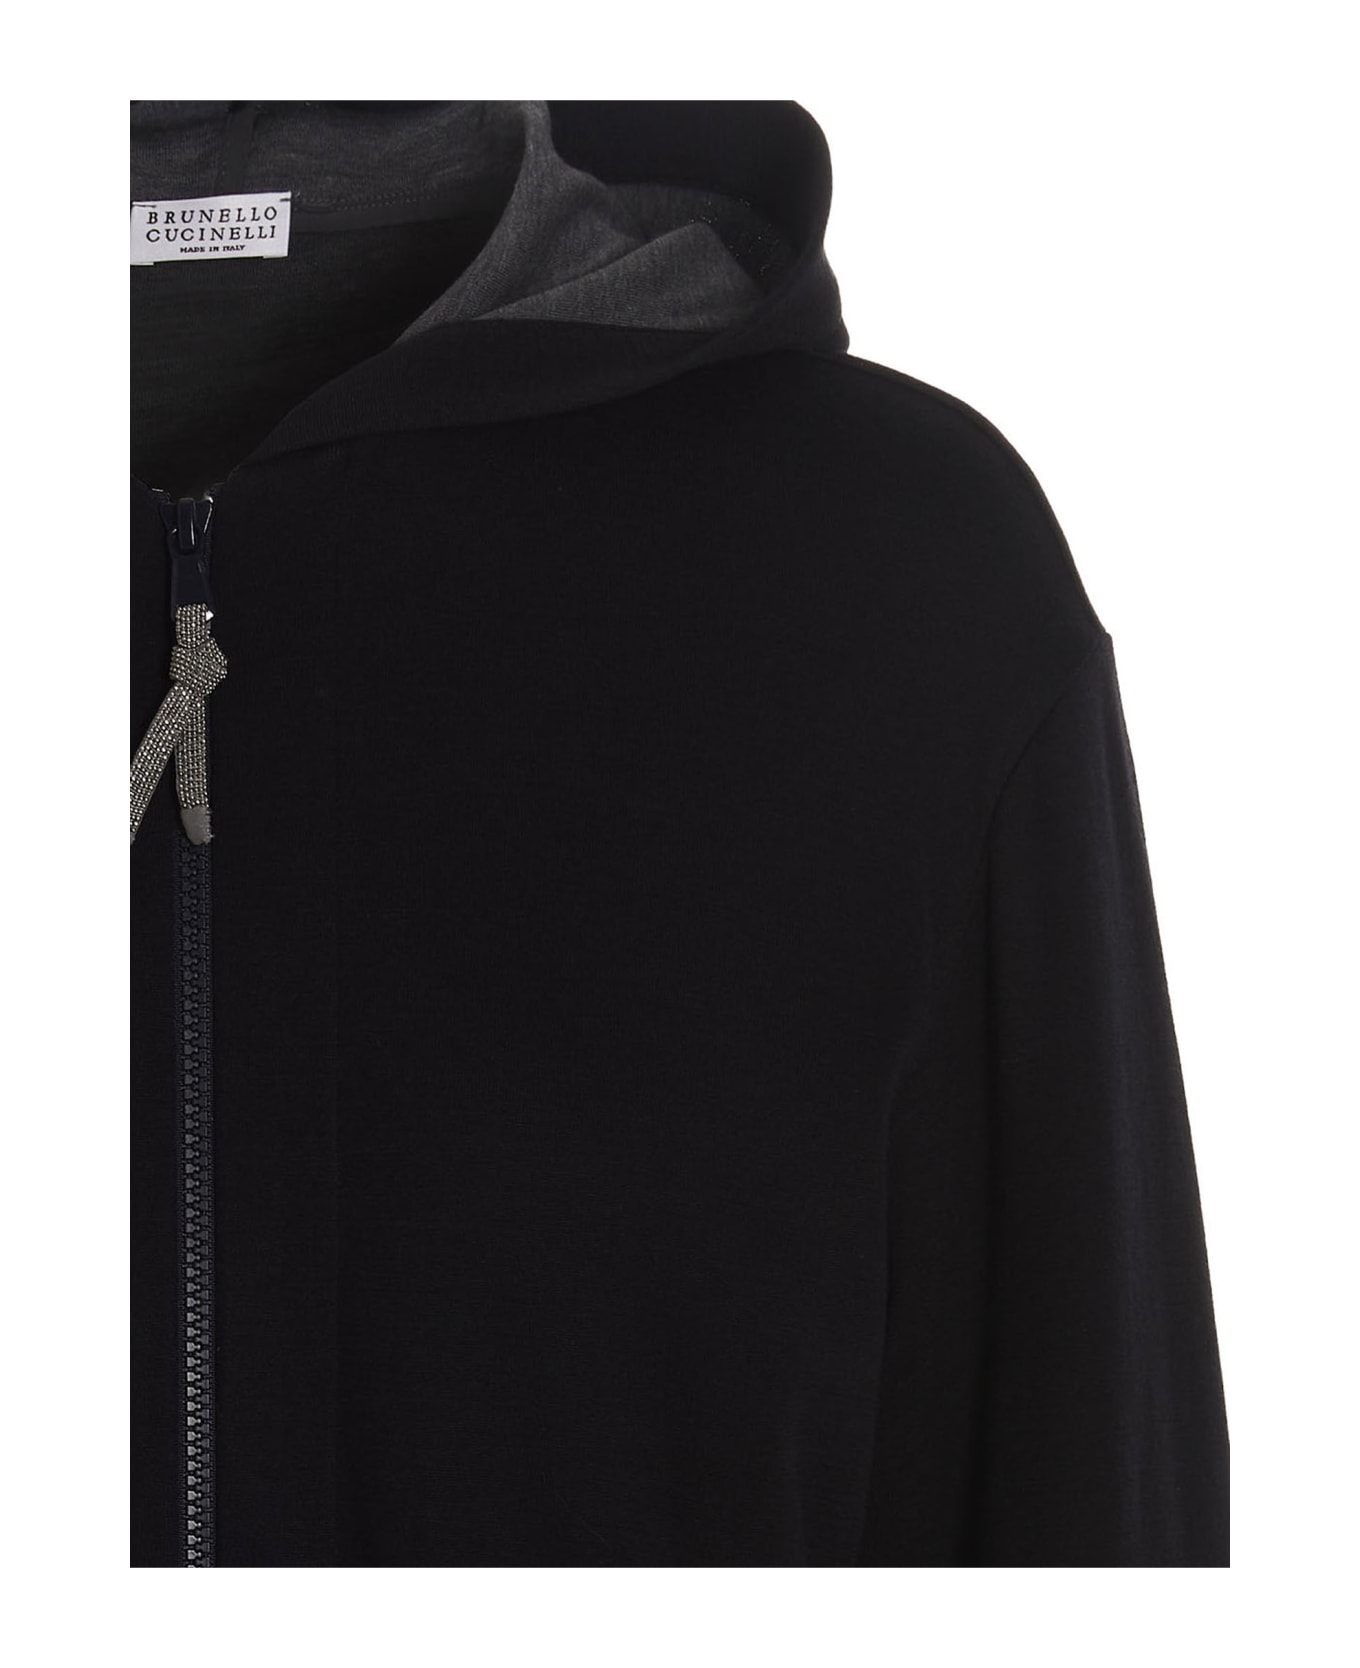 Brunello Cucinelli Cotton And Silk Sweatshirt With Hood - Blu